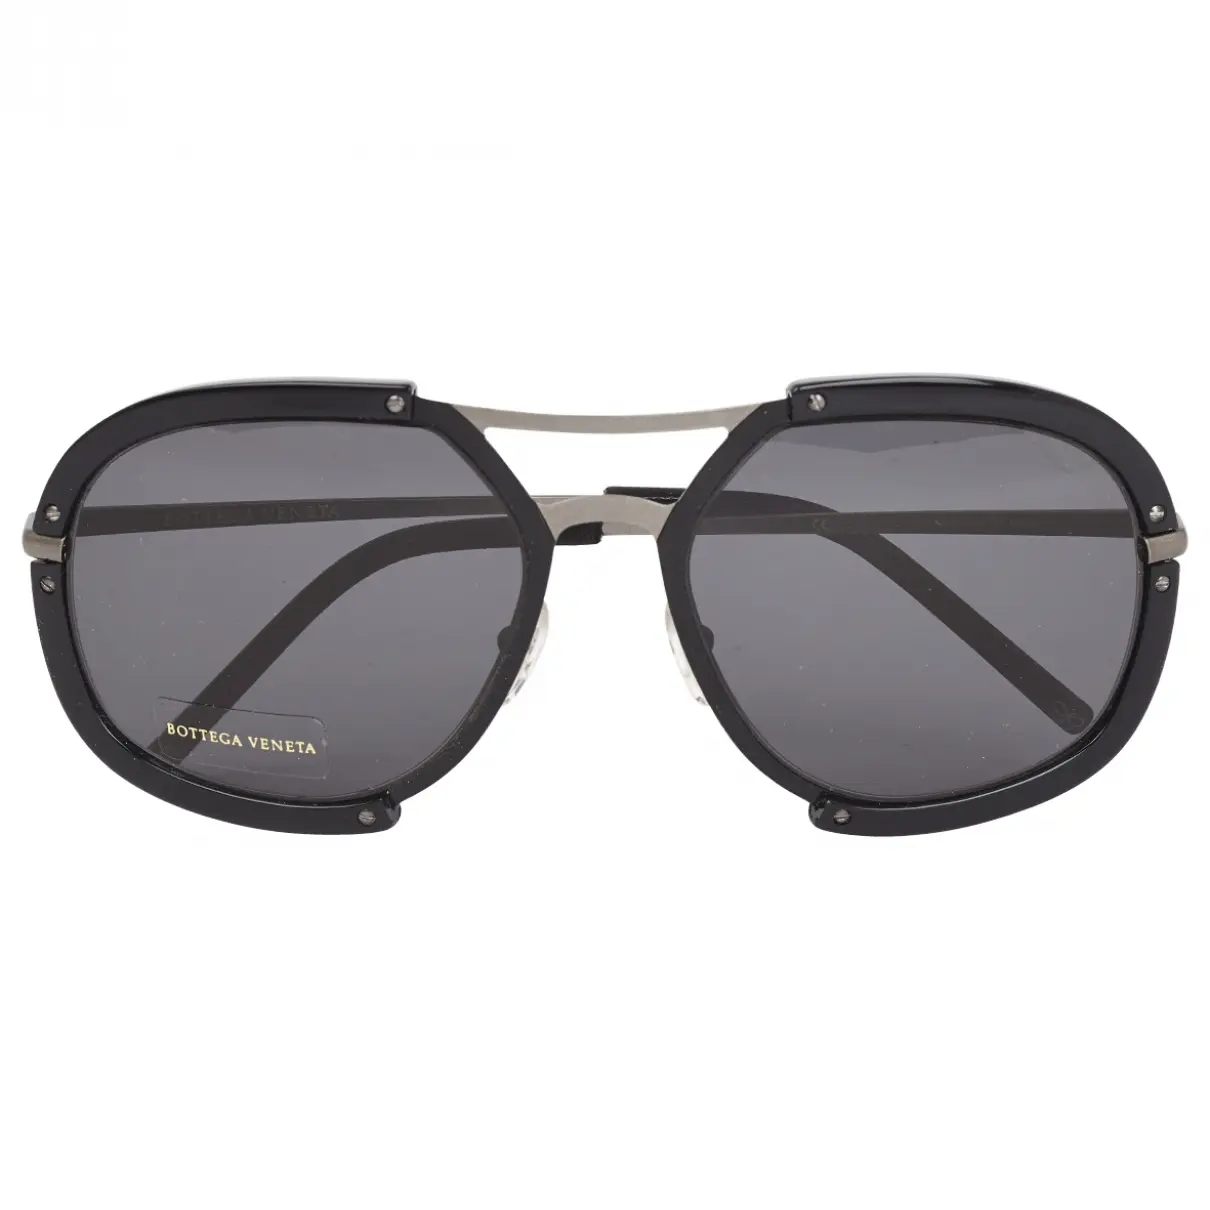 Black Plastic Sunglasses Bottega Veneta